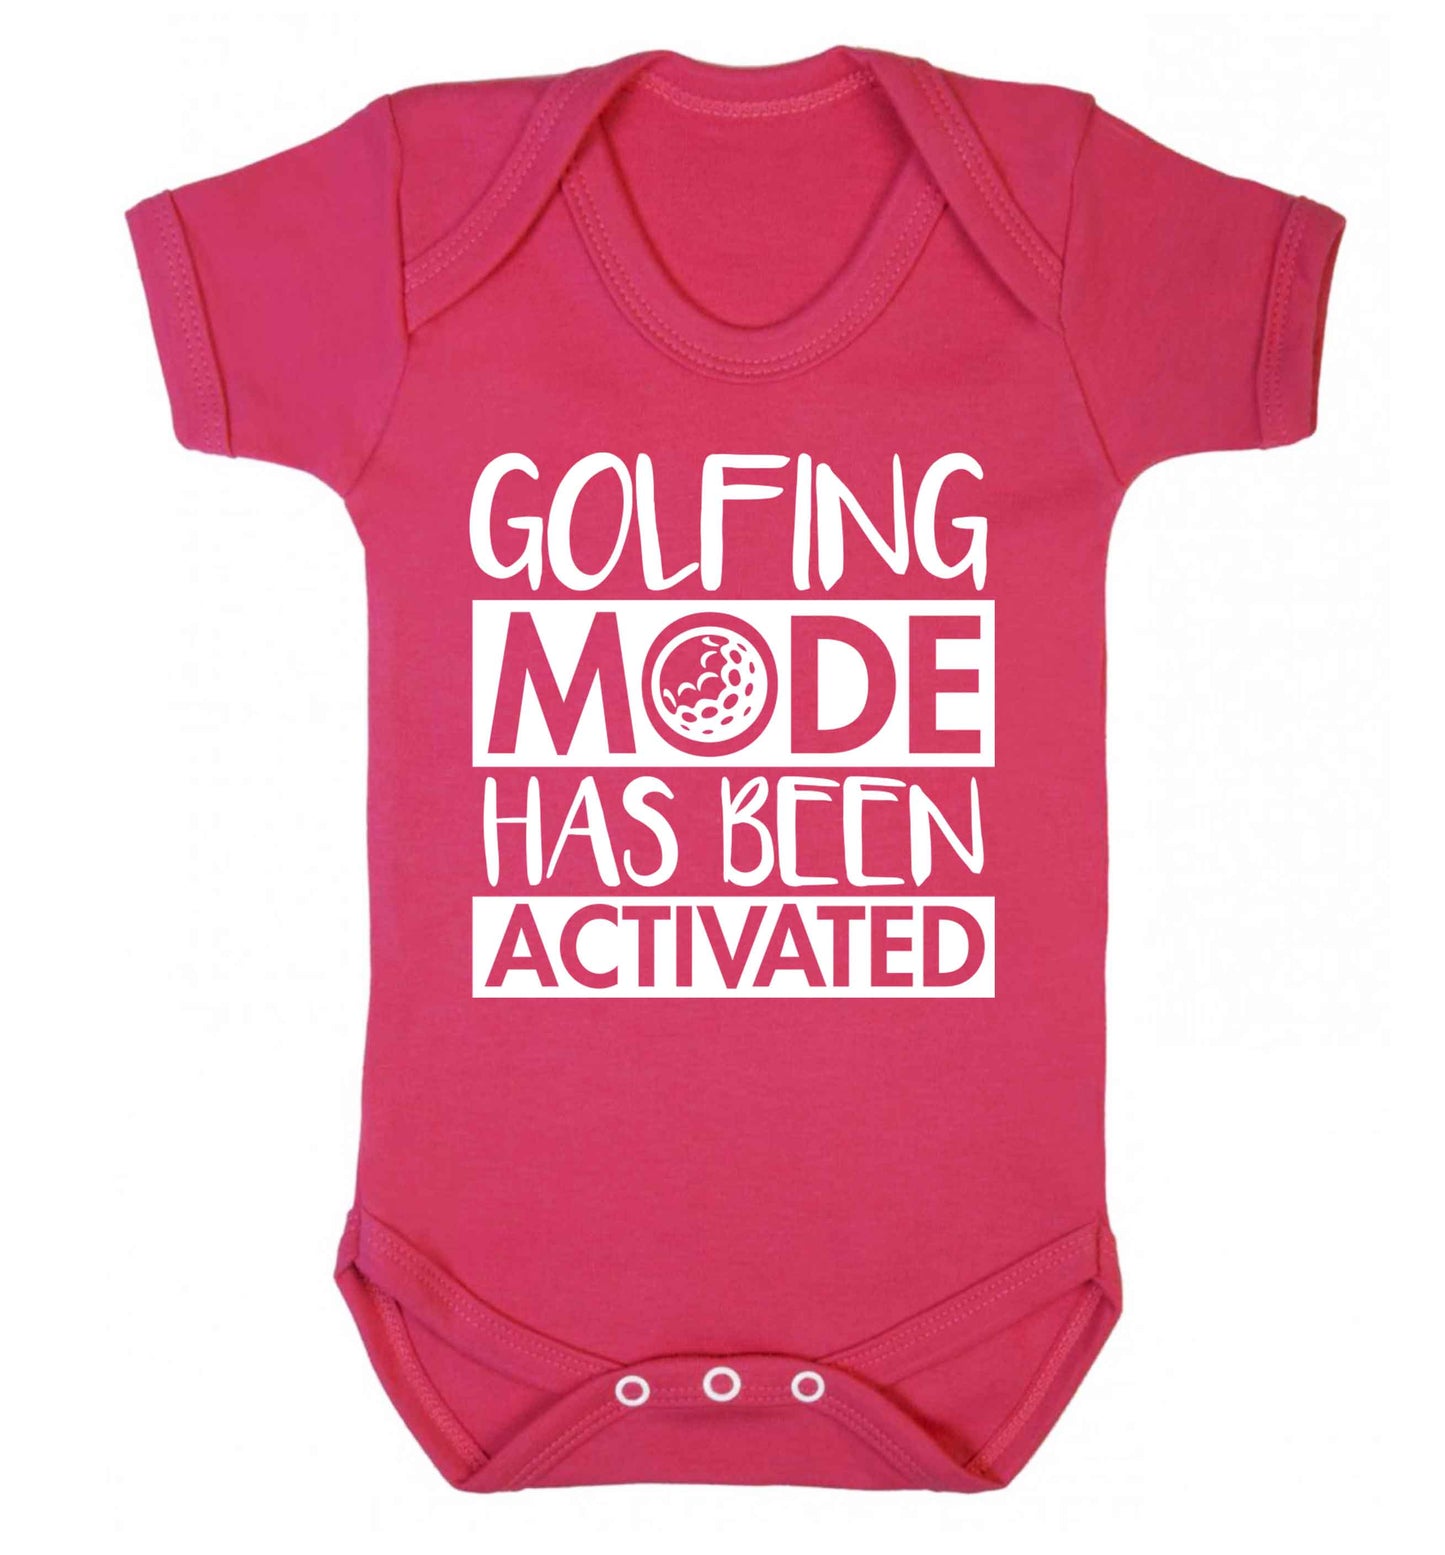 Golfing mode has been activated Baby Vest dark pink 18-24 months